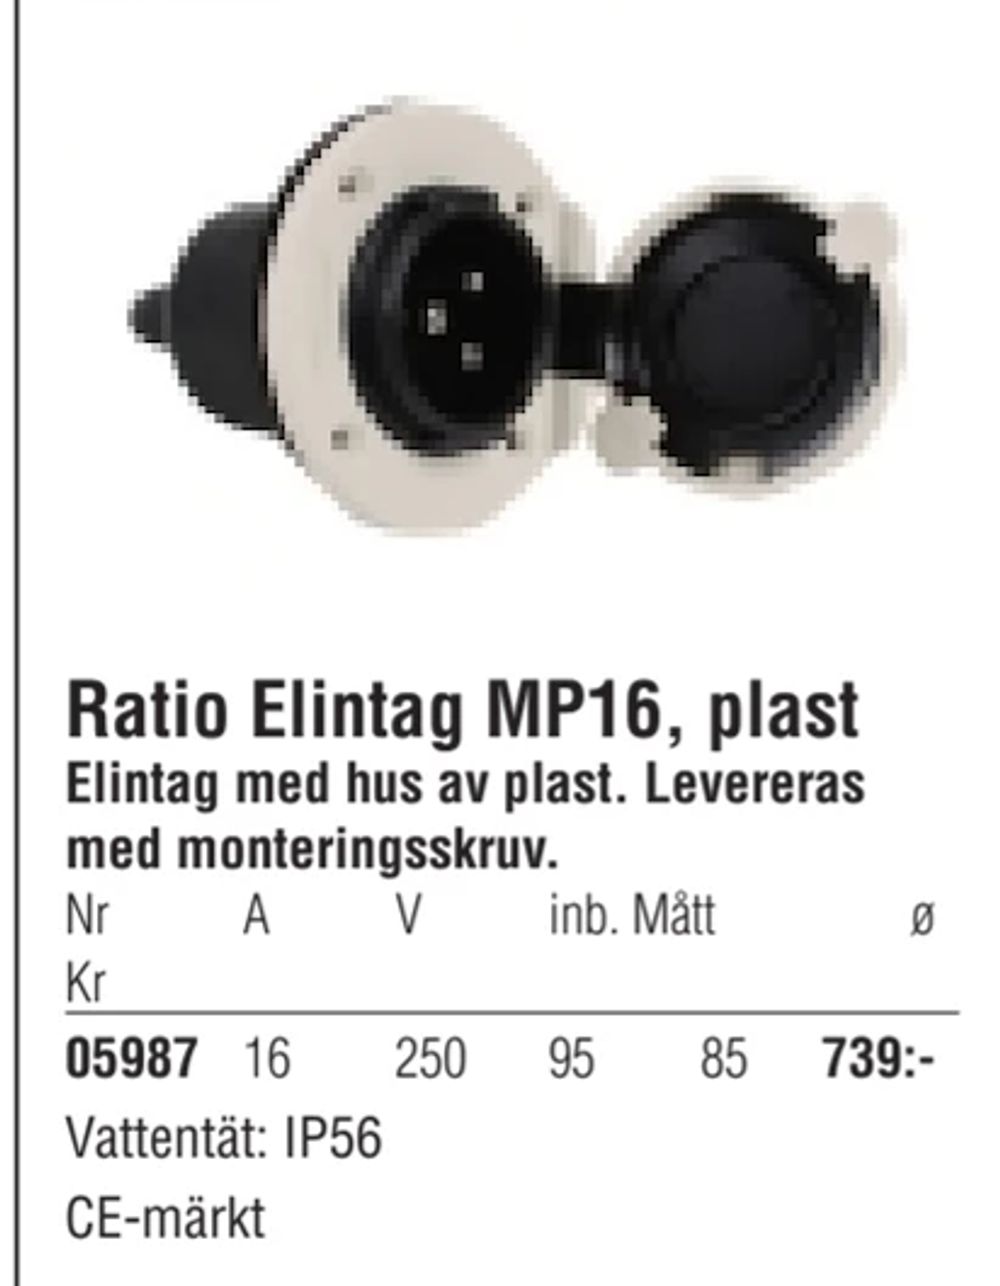 Erbjudanden på Ratio Elintag MP16, plast från Erlandsons Brygga för 739 kr